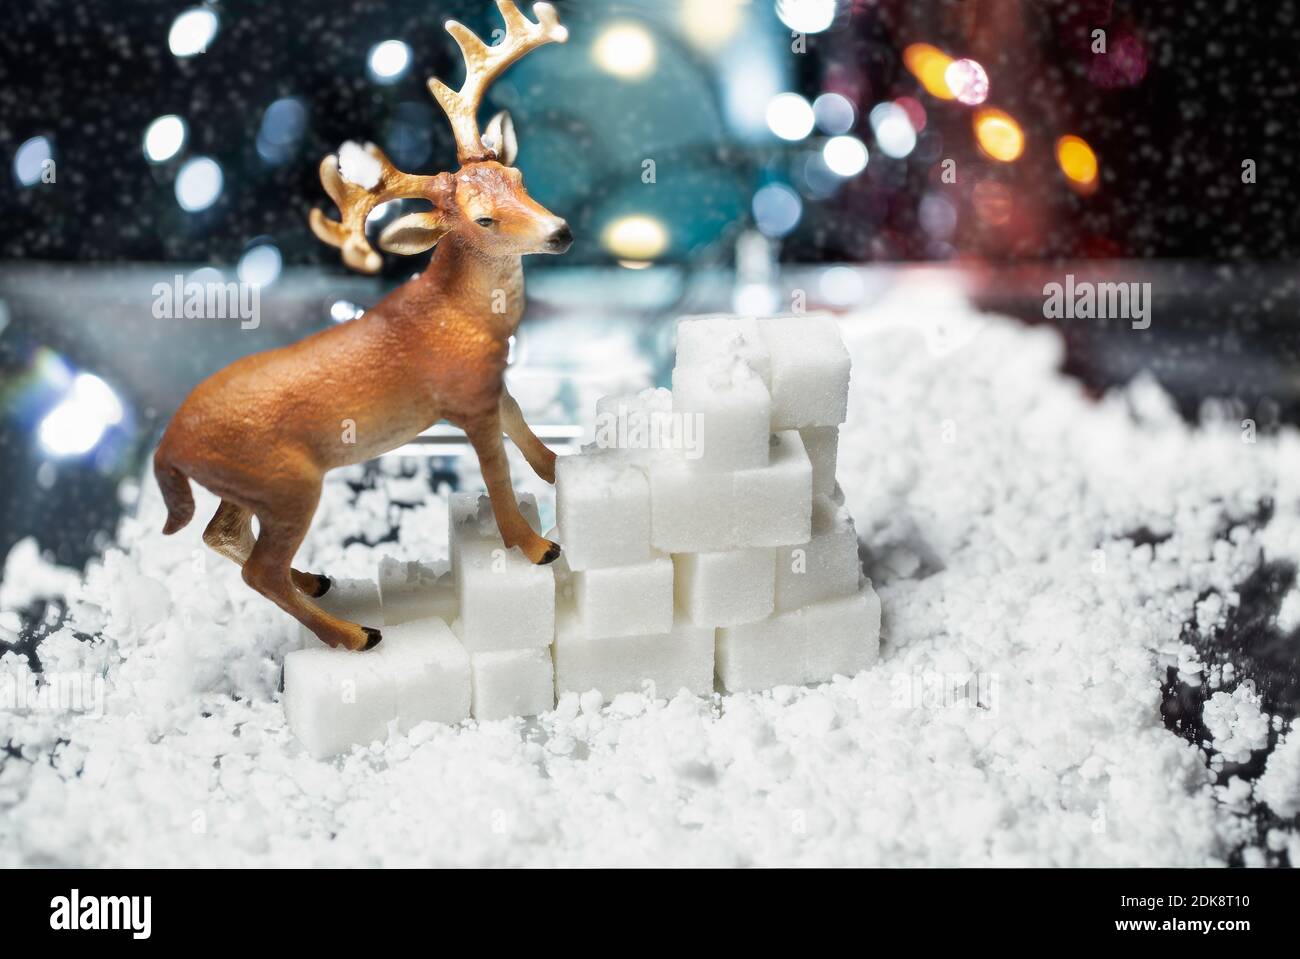 Szene von dekorativen Rentieren über künstlichem Schnee und Zuckerwürfeln Mit einem Bokeh Weihnachtsbeleuchtung Hintergrund Stockfoto